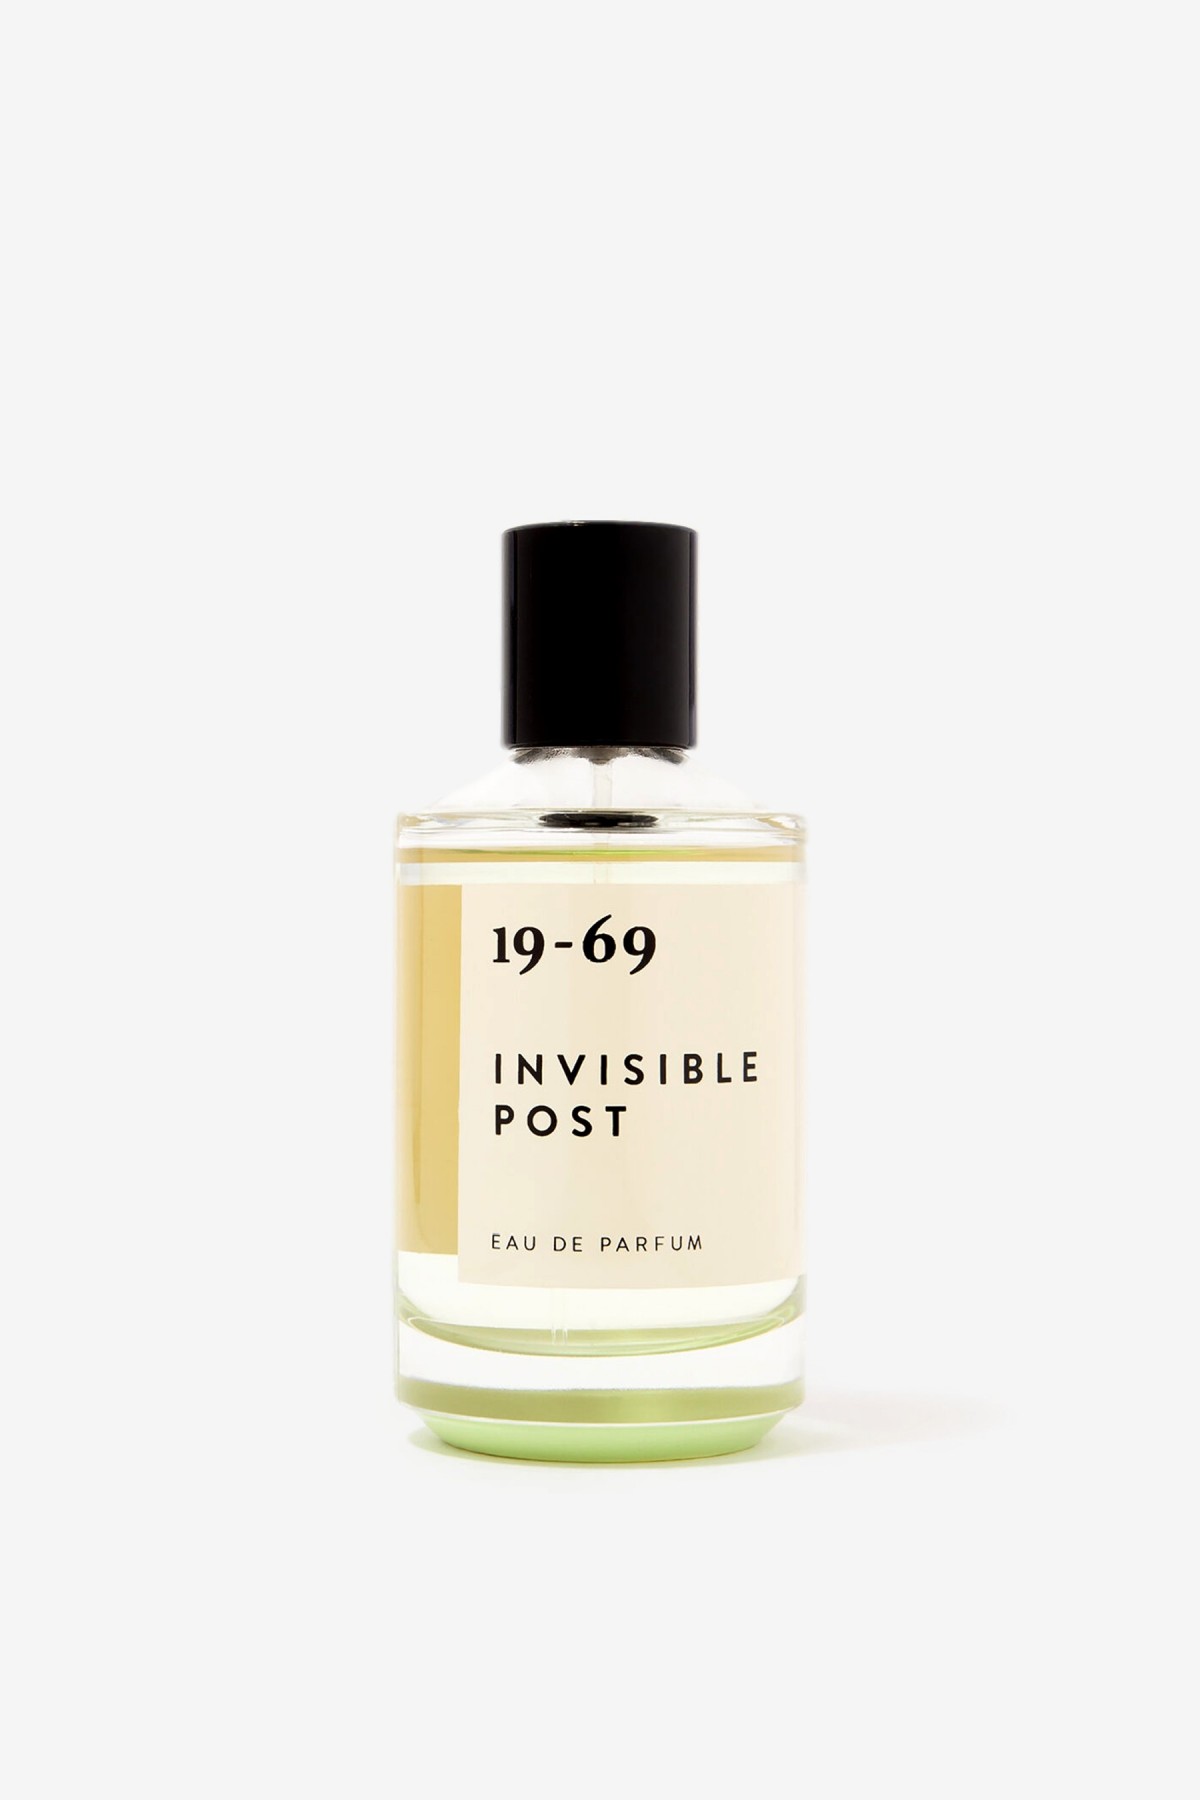 19-69 Invisible Post Eau de Parfum in 50ml